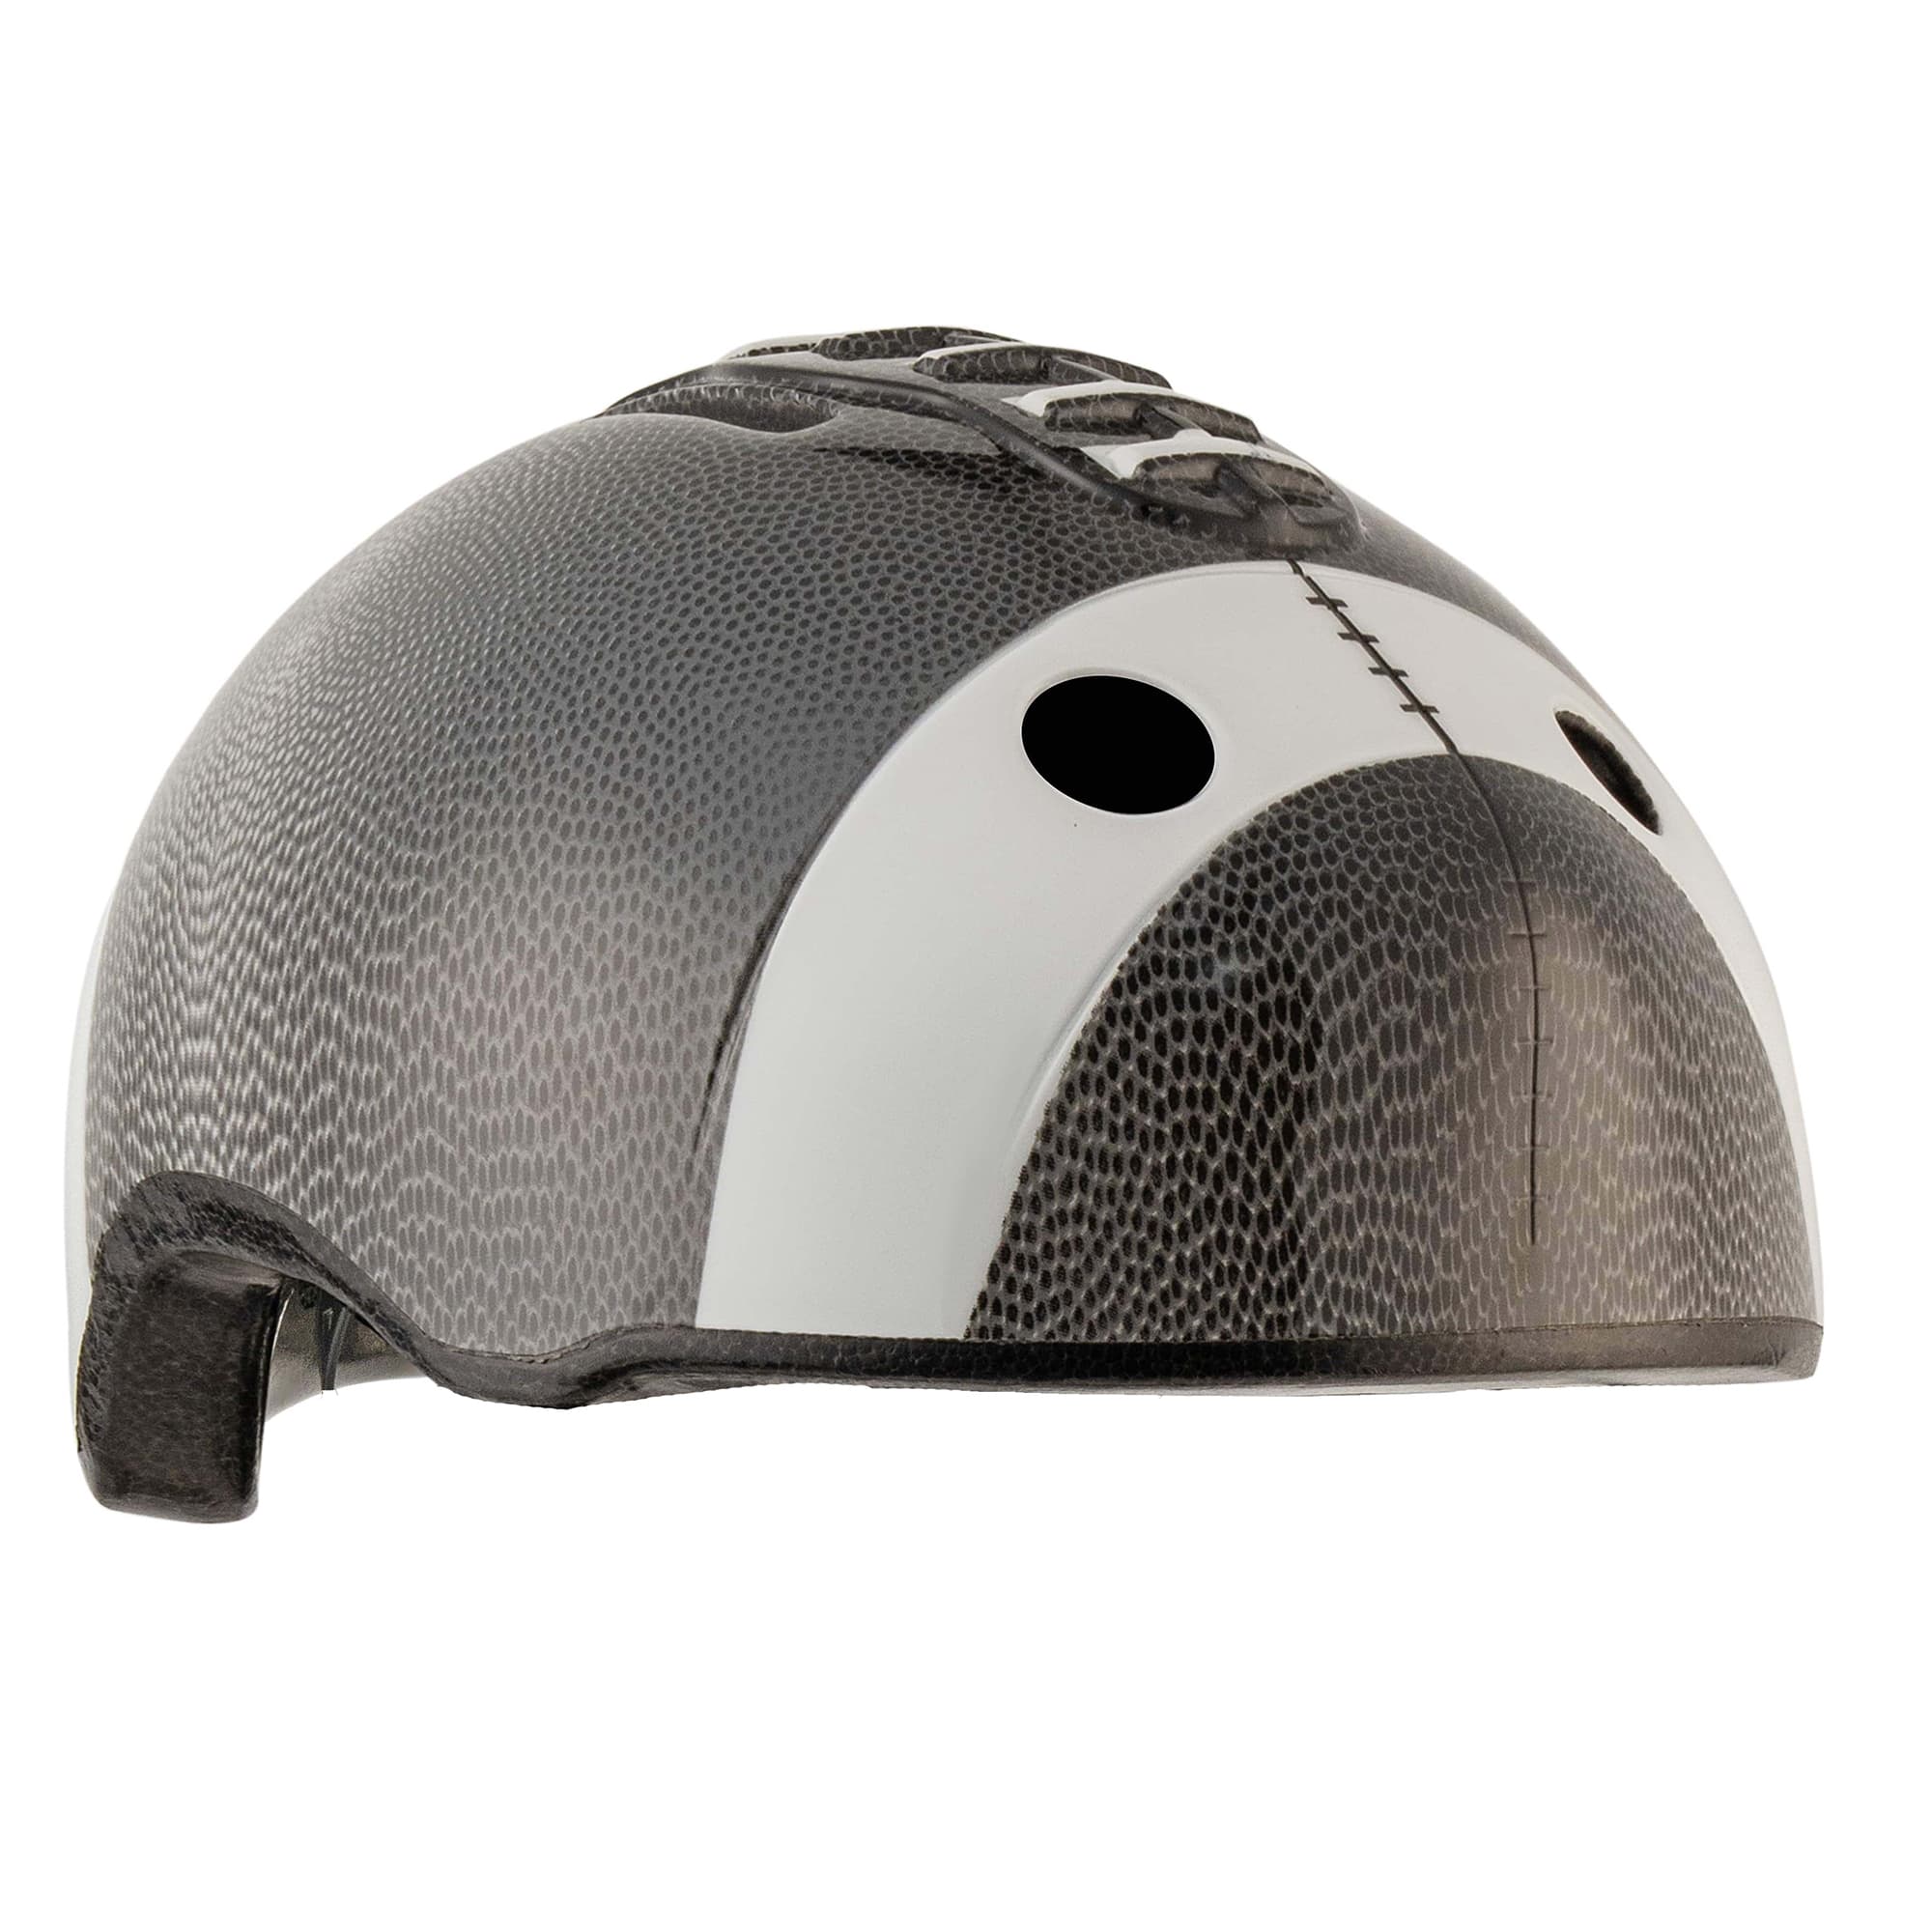 Crazy Safety - Football Bicycle Helmet - Black (103001-02) - Leker